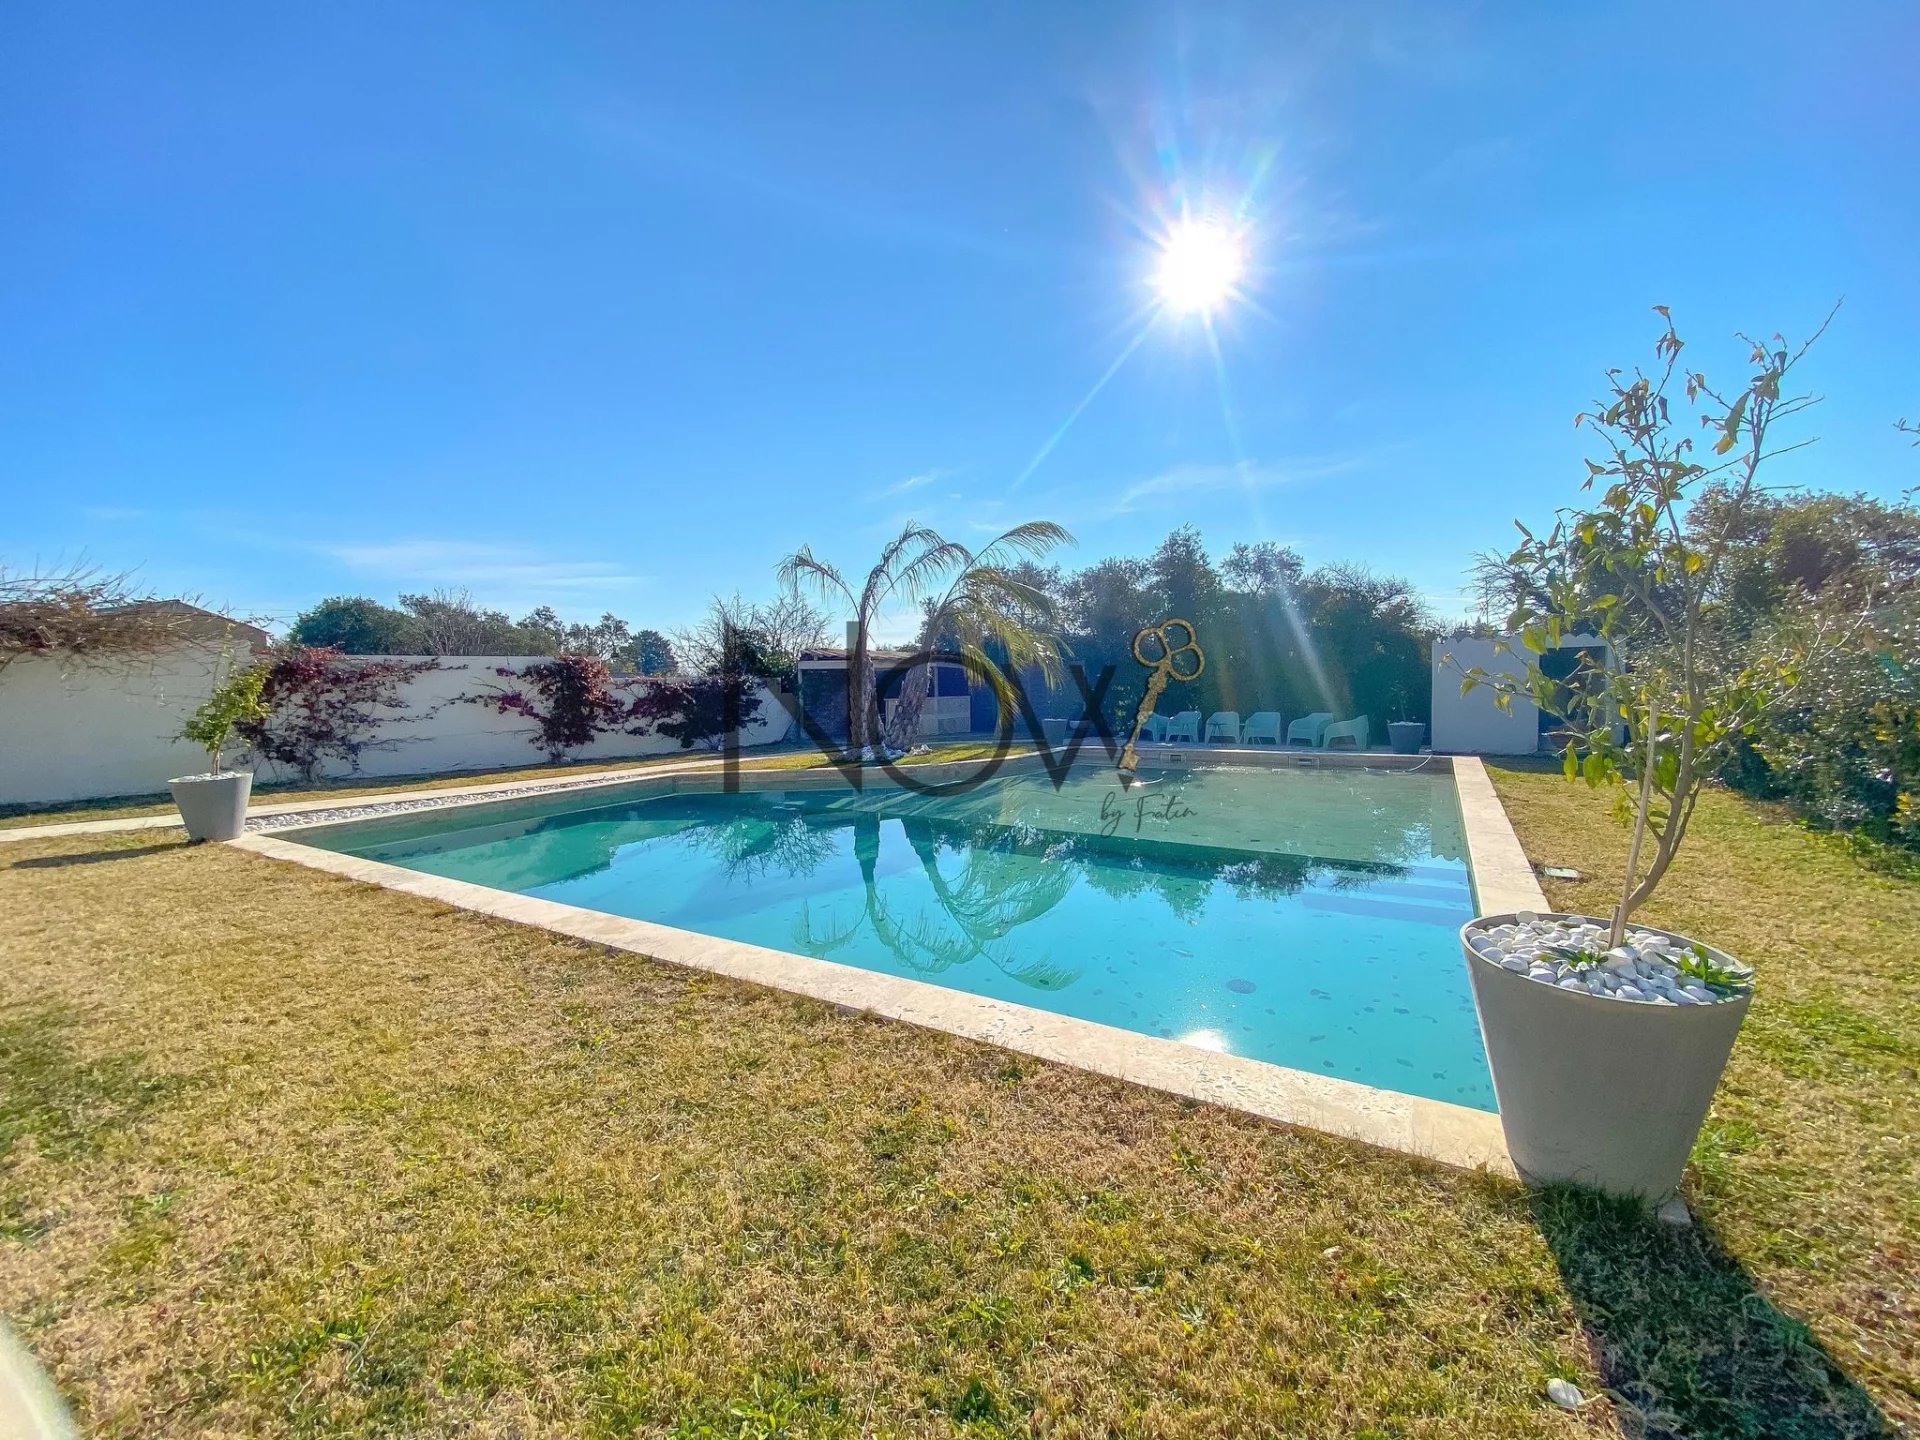 SOUS COMPROMIS DE VENTE -Villa rénovée de 115m² avec piscine sur 958m² de terrain !